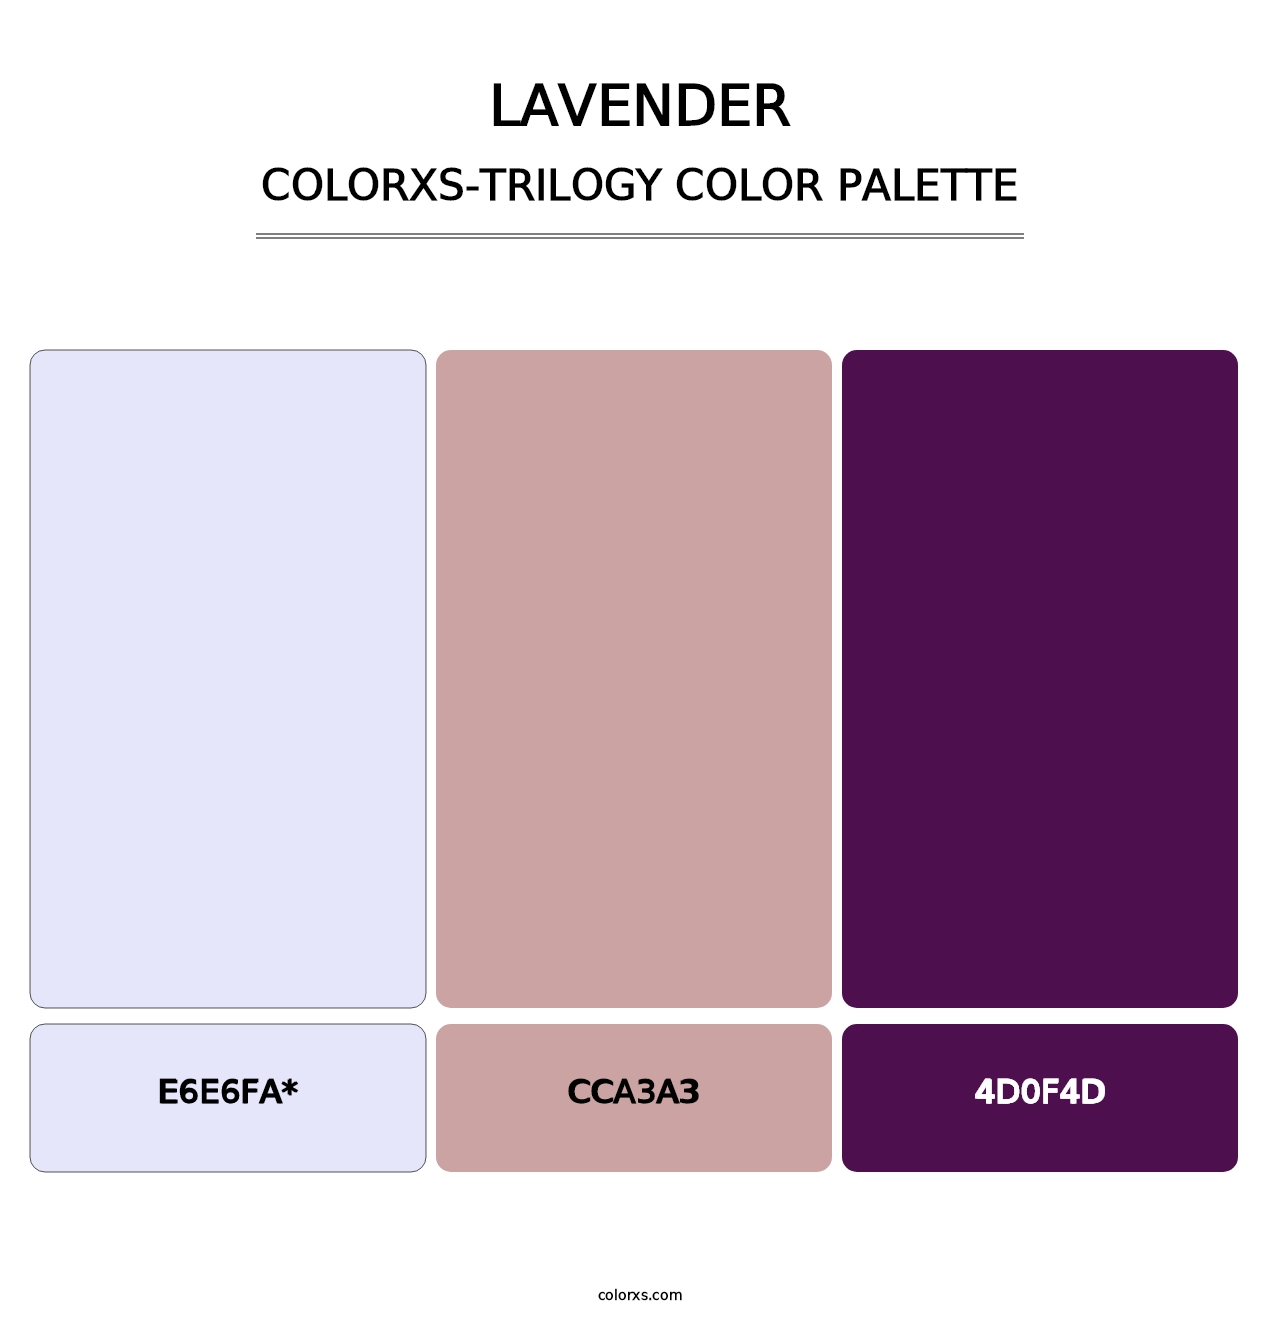 Lavender - Colorxs Trilogy Palette